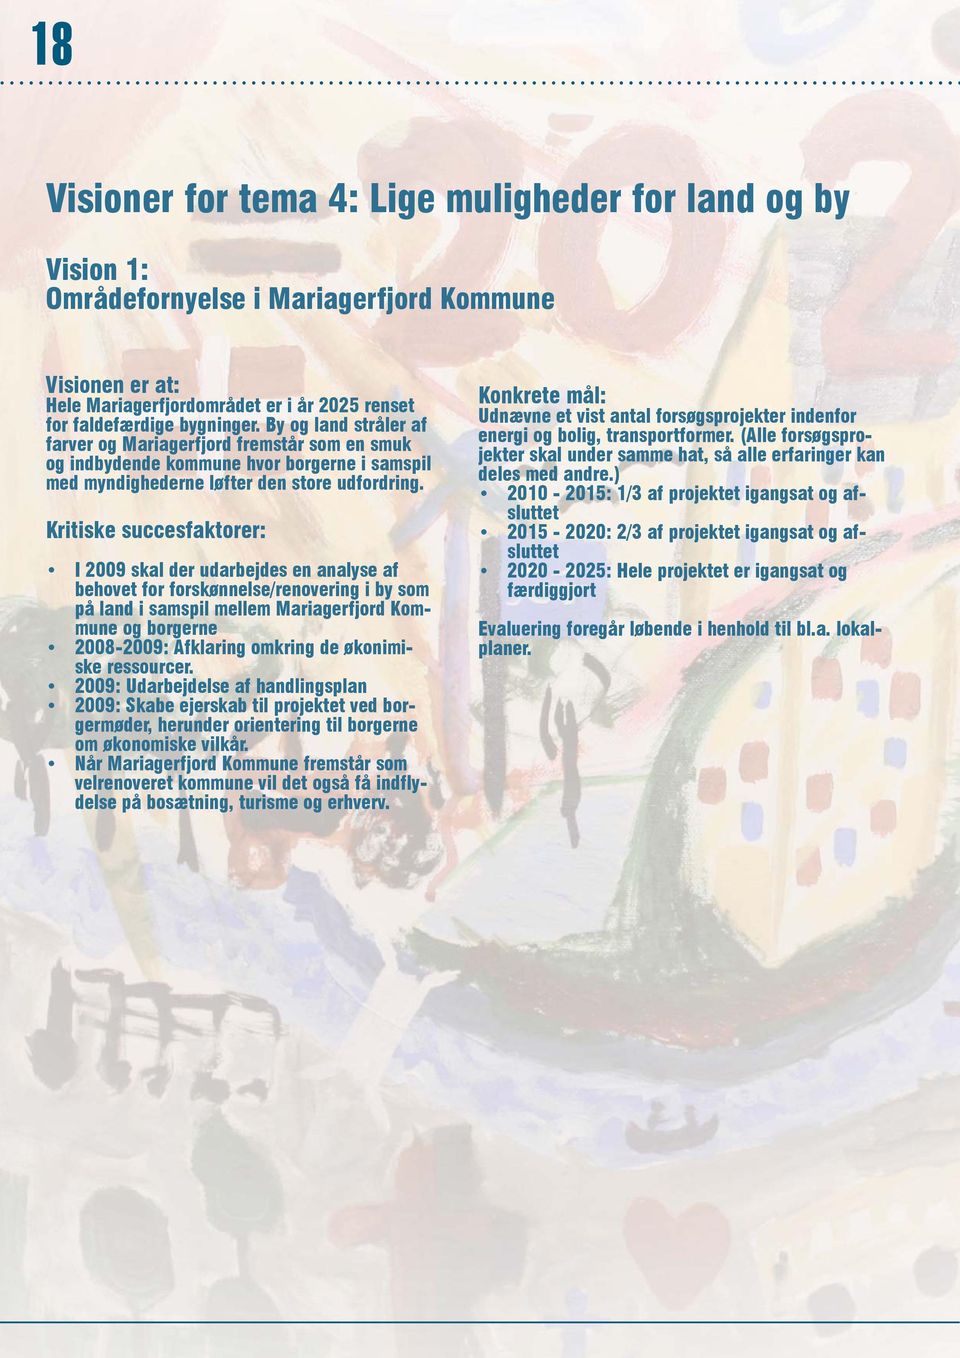 Kritiske succesfaktorer: I 2009 skal der udarbejdes en analyse af behovet for forskønnelse/renovering i by som på land i samspil mellem Mariagerfjord Kommune og borgerne 2008-2009: Afklaring omkring